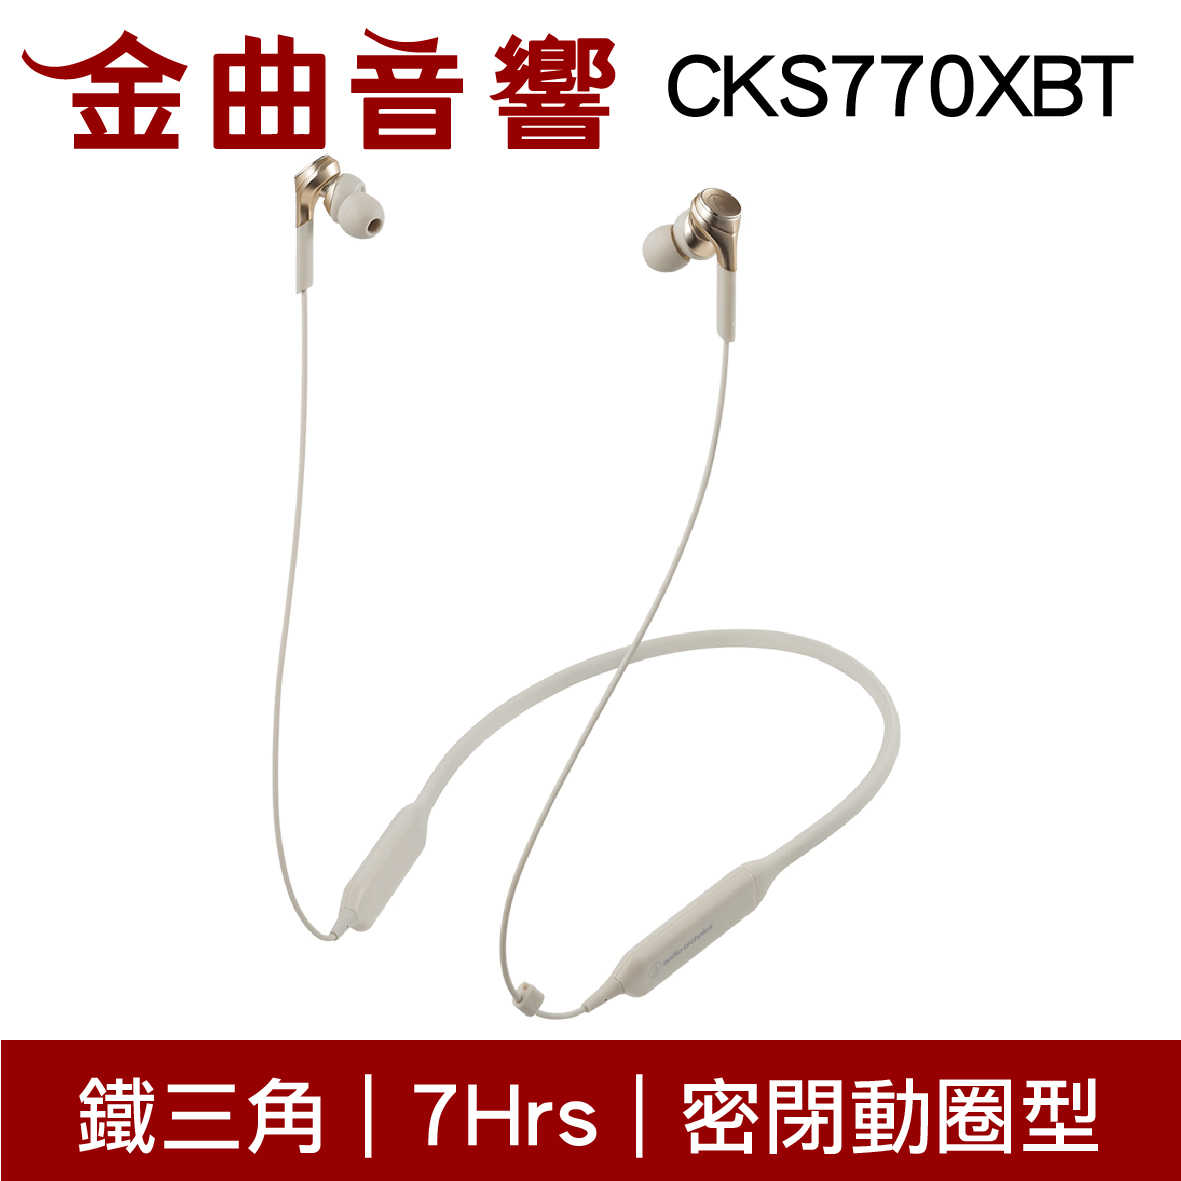 鐵三角 ATH-CKS770XBT 藍牙 耳機 無線 重低音 CKS770XBT | 金曲音響